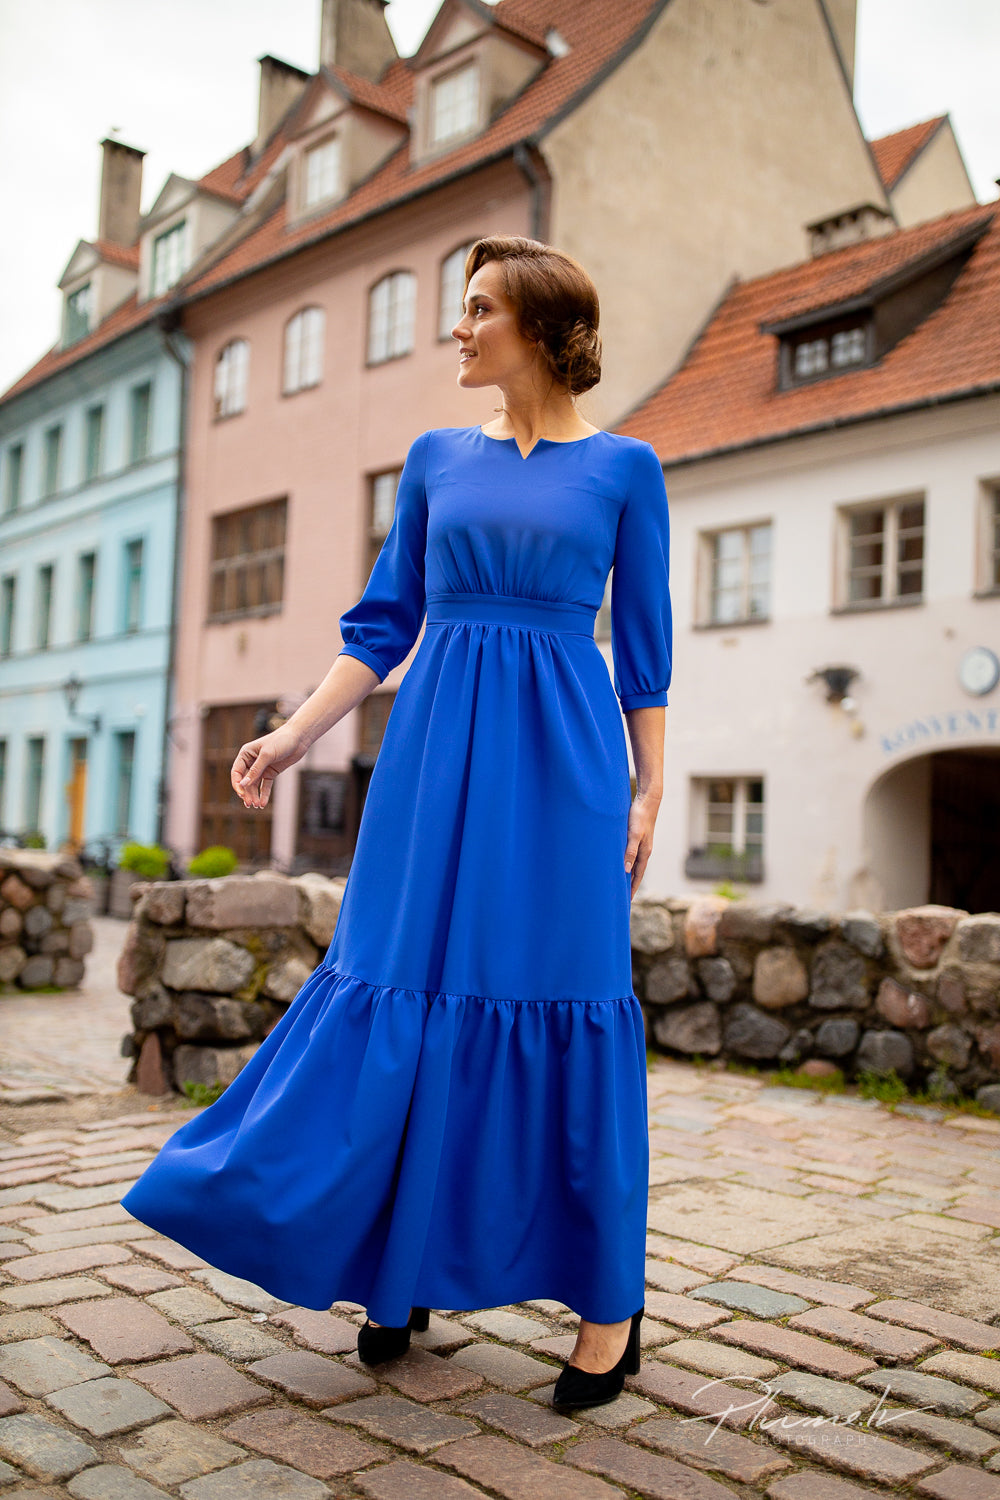 Dress "Annii blue" delivery after 15 December